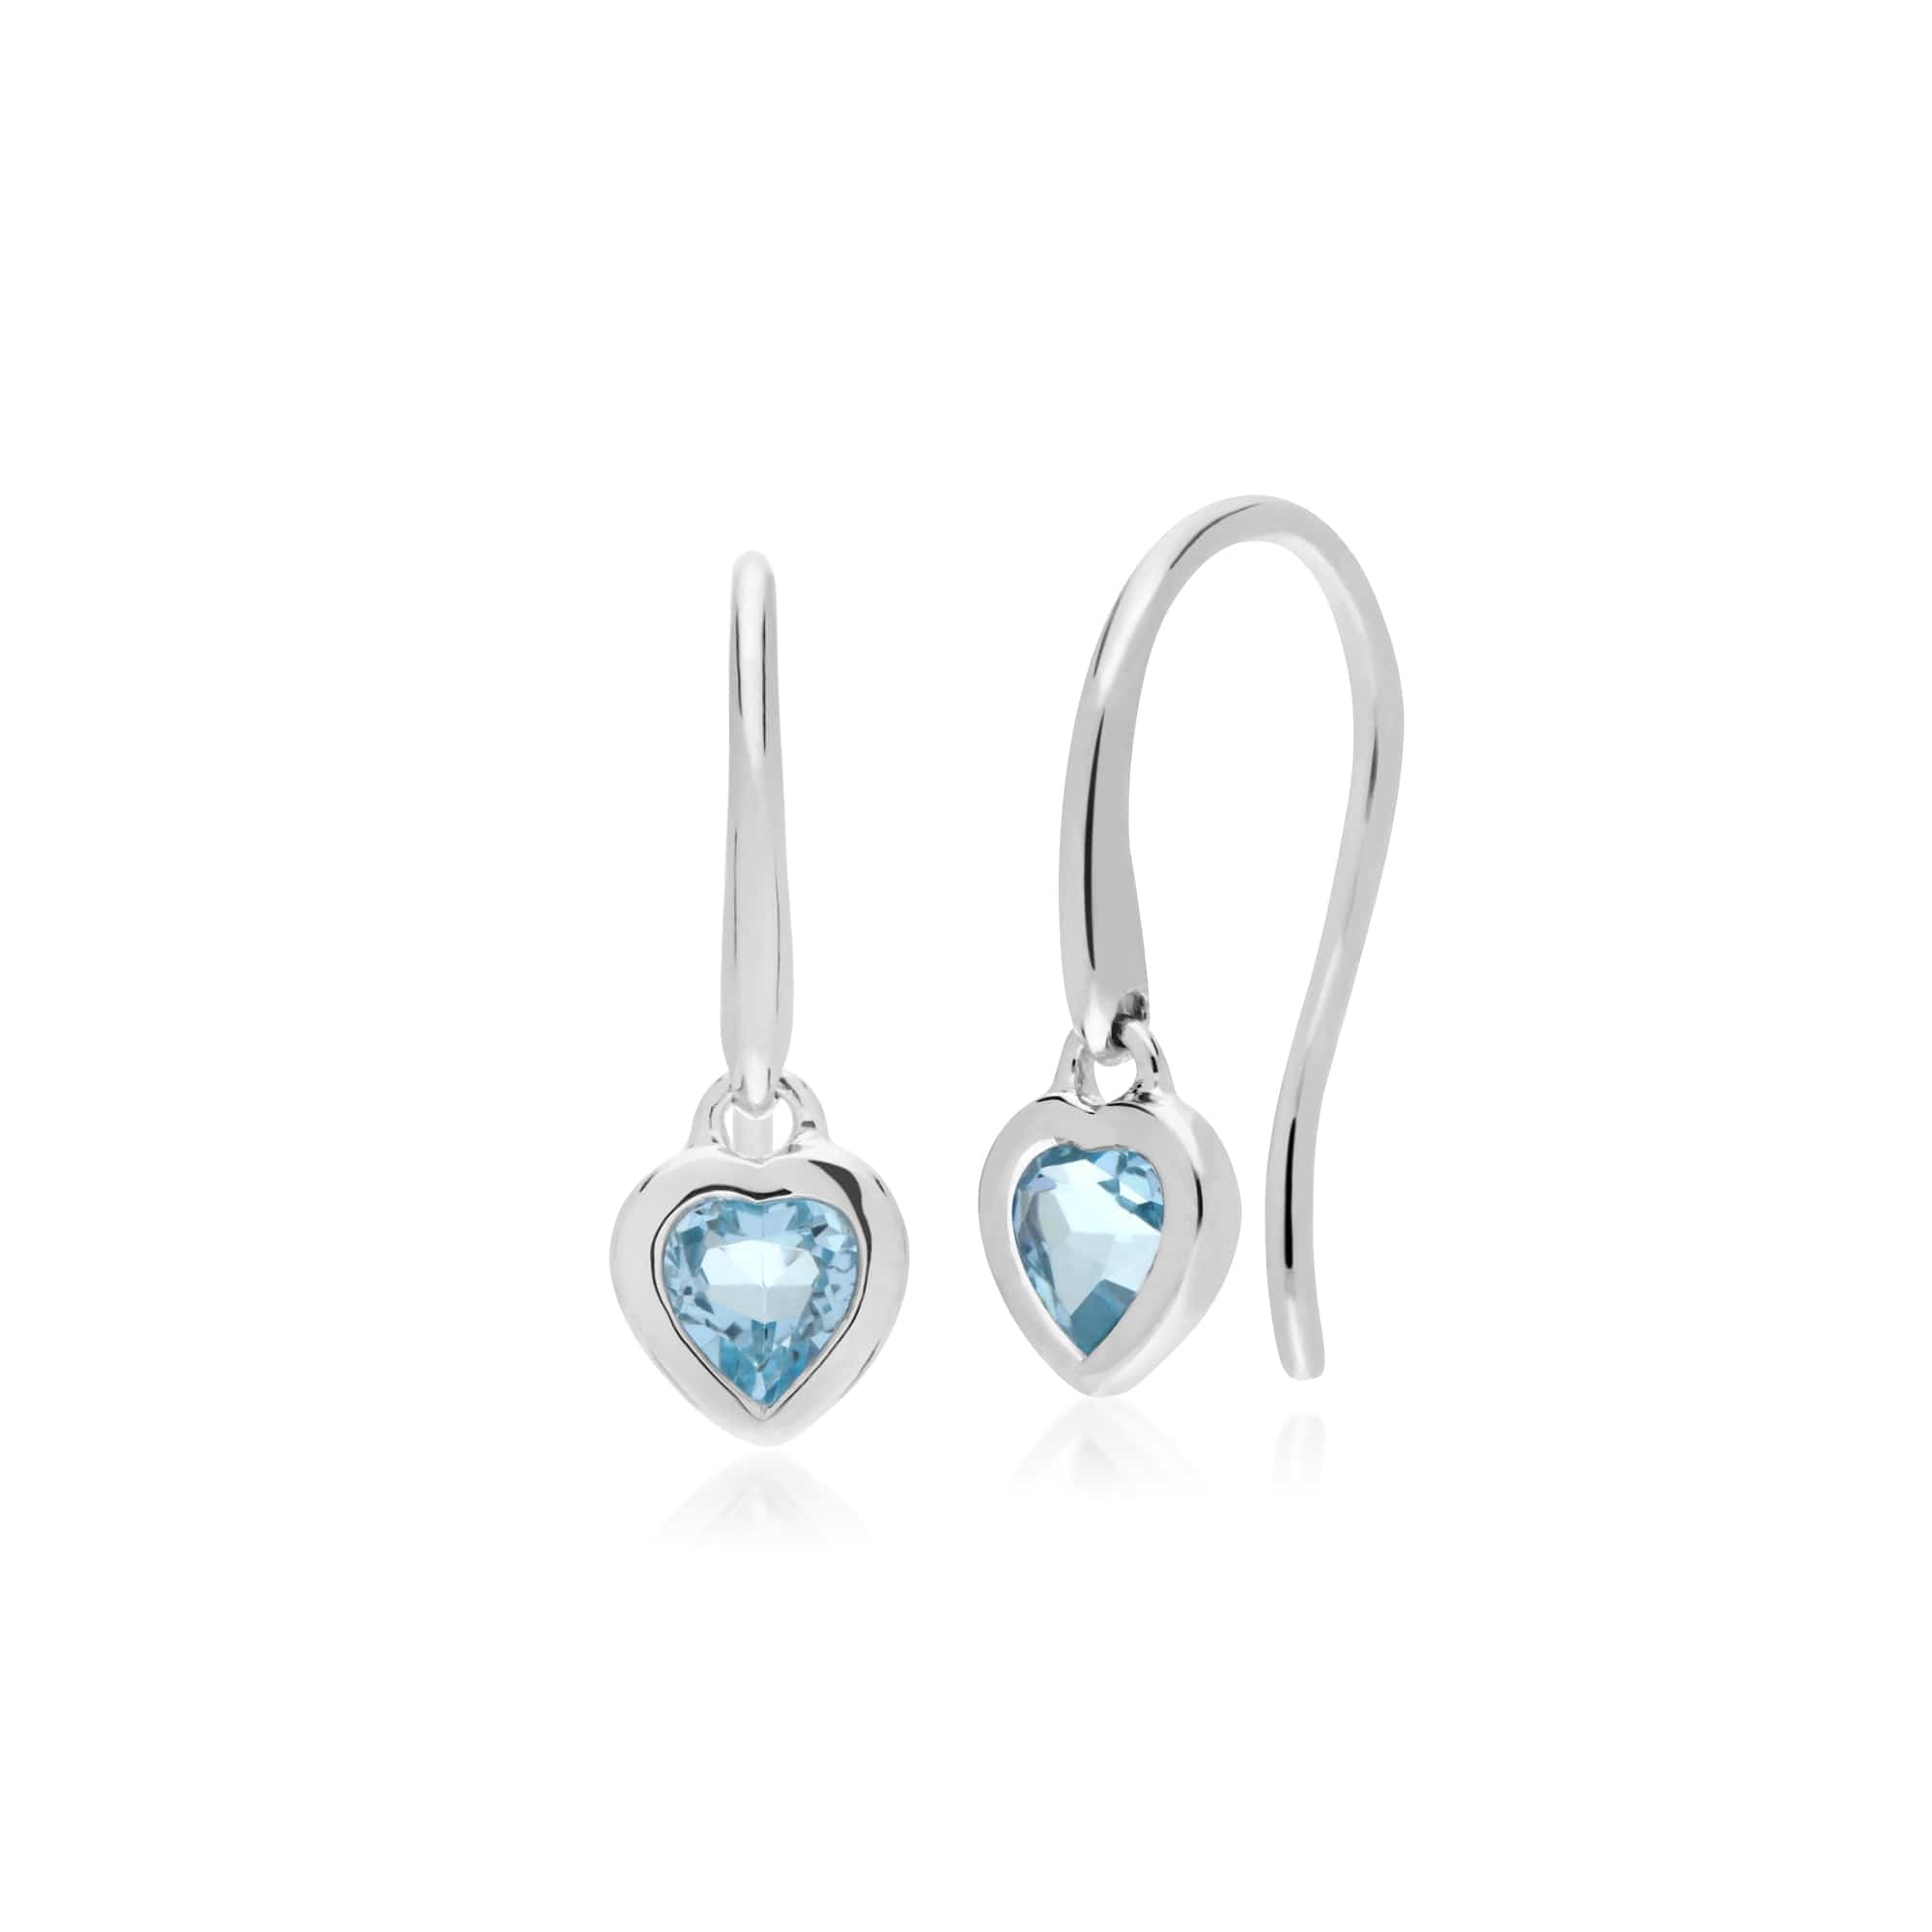 270E026202925-270P028702925 Classic Heart Blue Topaz Drop Earrings & Pendant Set in 925 Sterling Silver 2